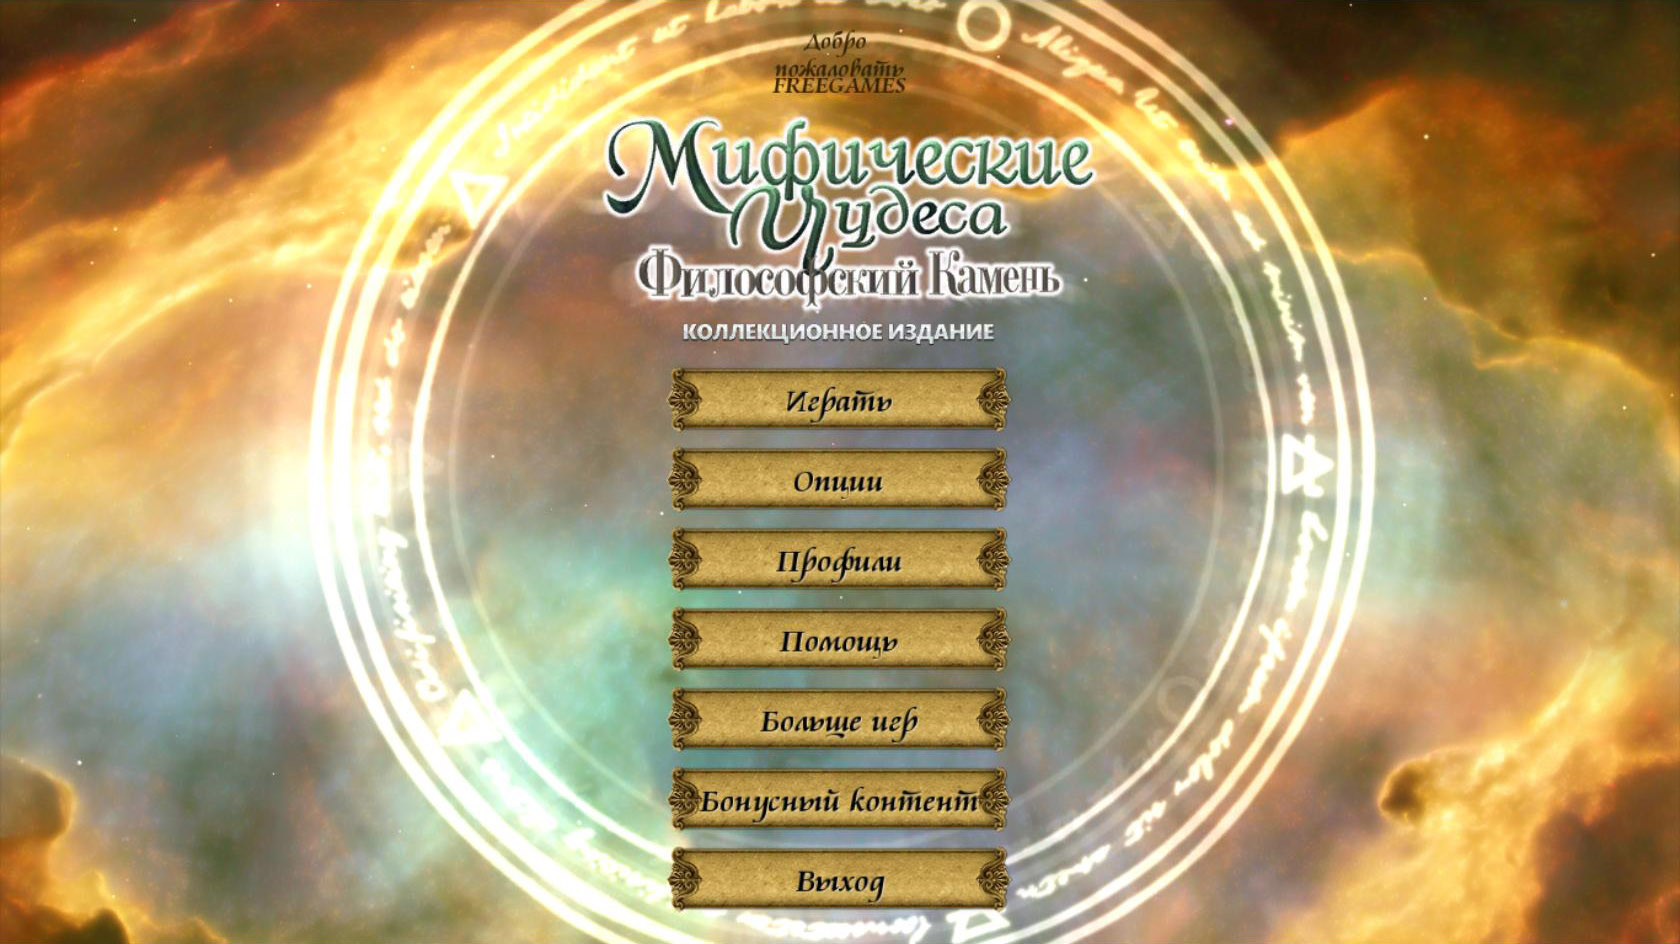 Мифические чудеса: Философский камень. Коллекционное издание | Mythic Wonders: The Philosopher’s Stone CE (Rus)